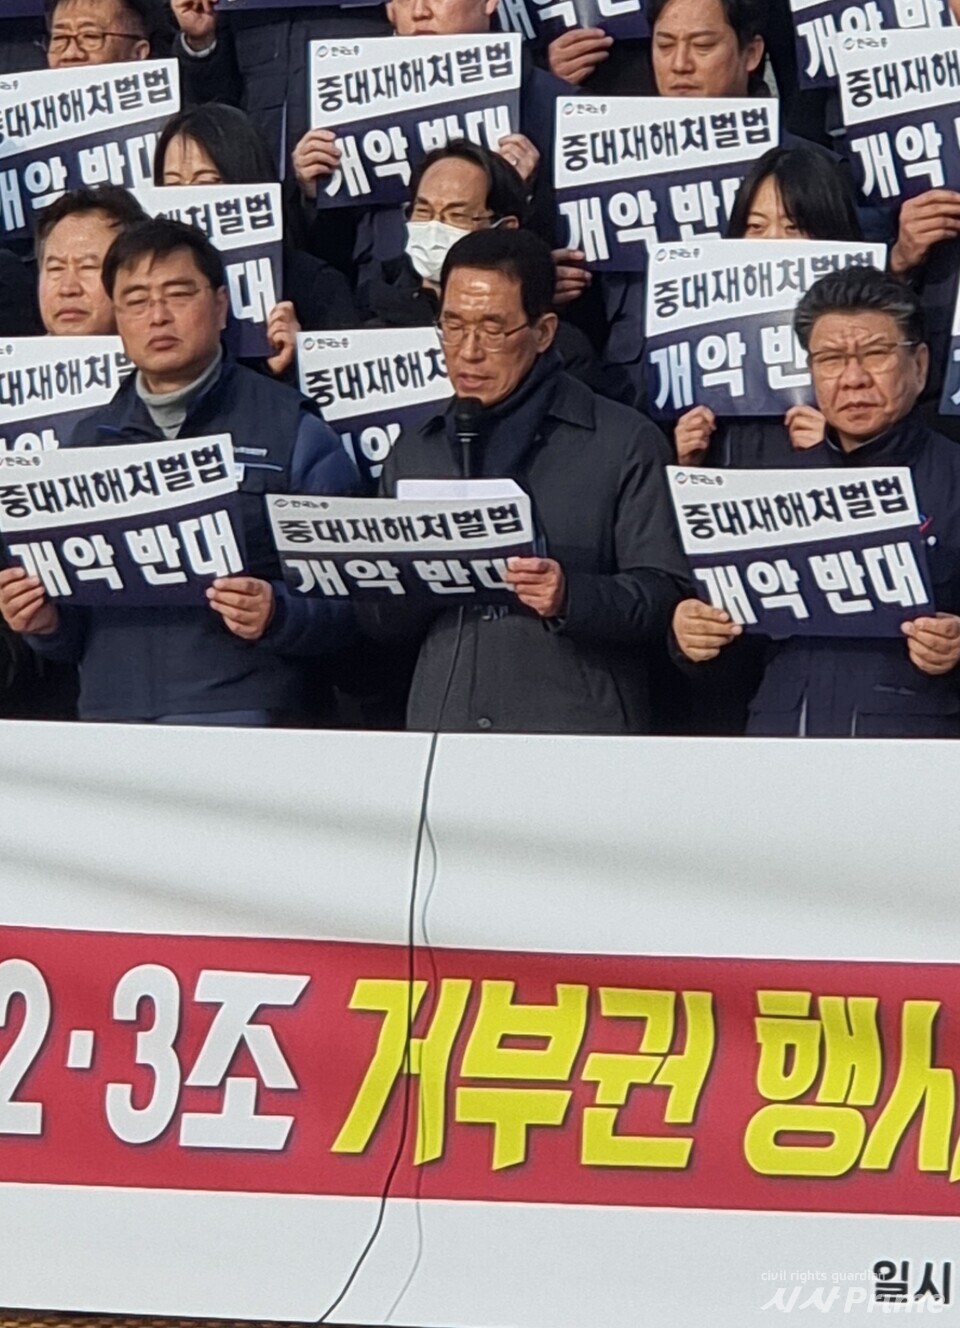 23.12.05 기자회견에서 김주영 더불어민주당 의원이 발언하고 있다. [사진=이가현 기자]